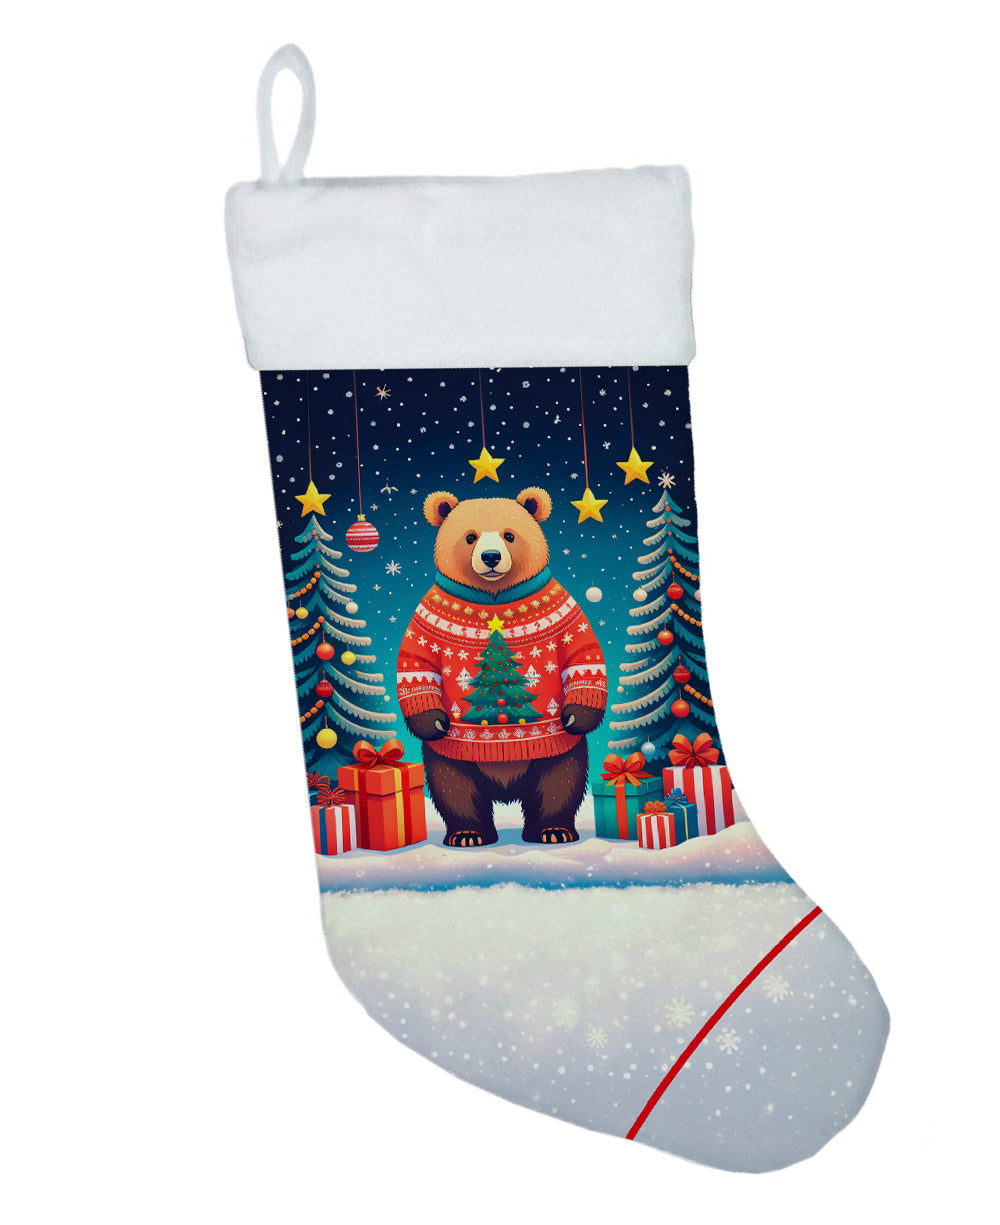 Buy this Bear Christmas Christmas Stocking